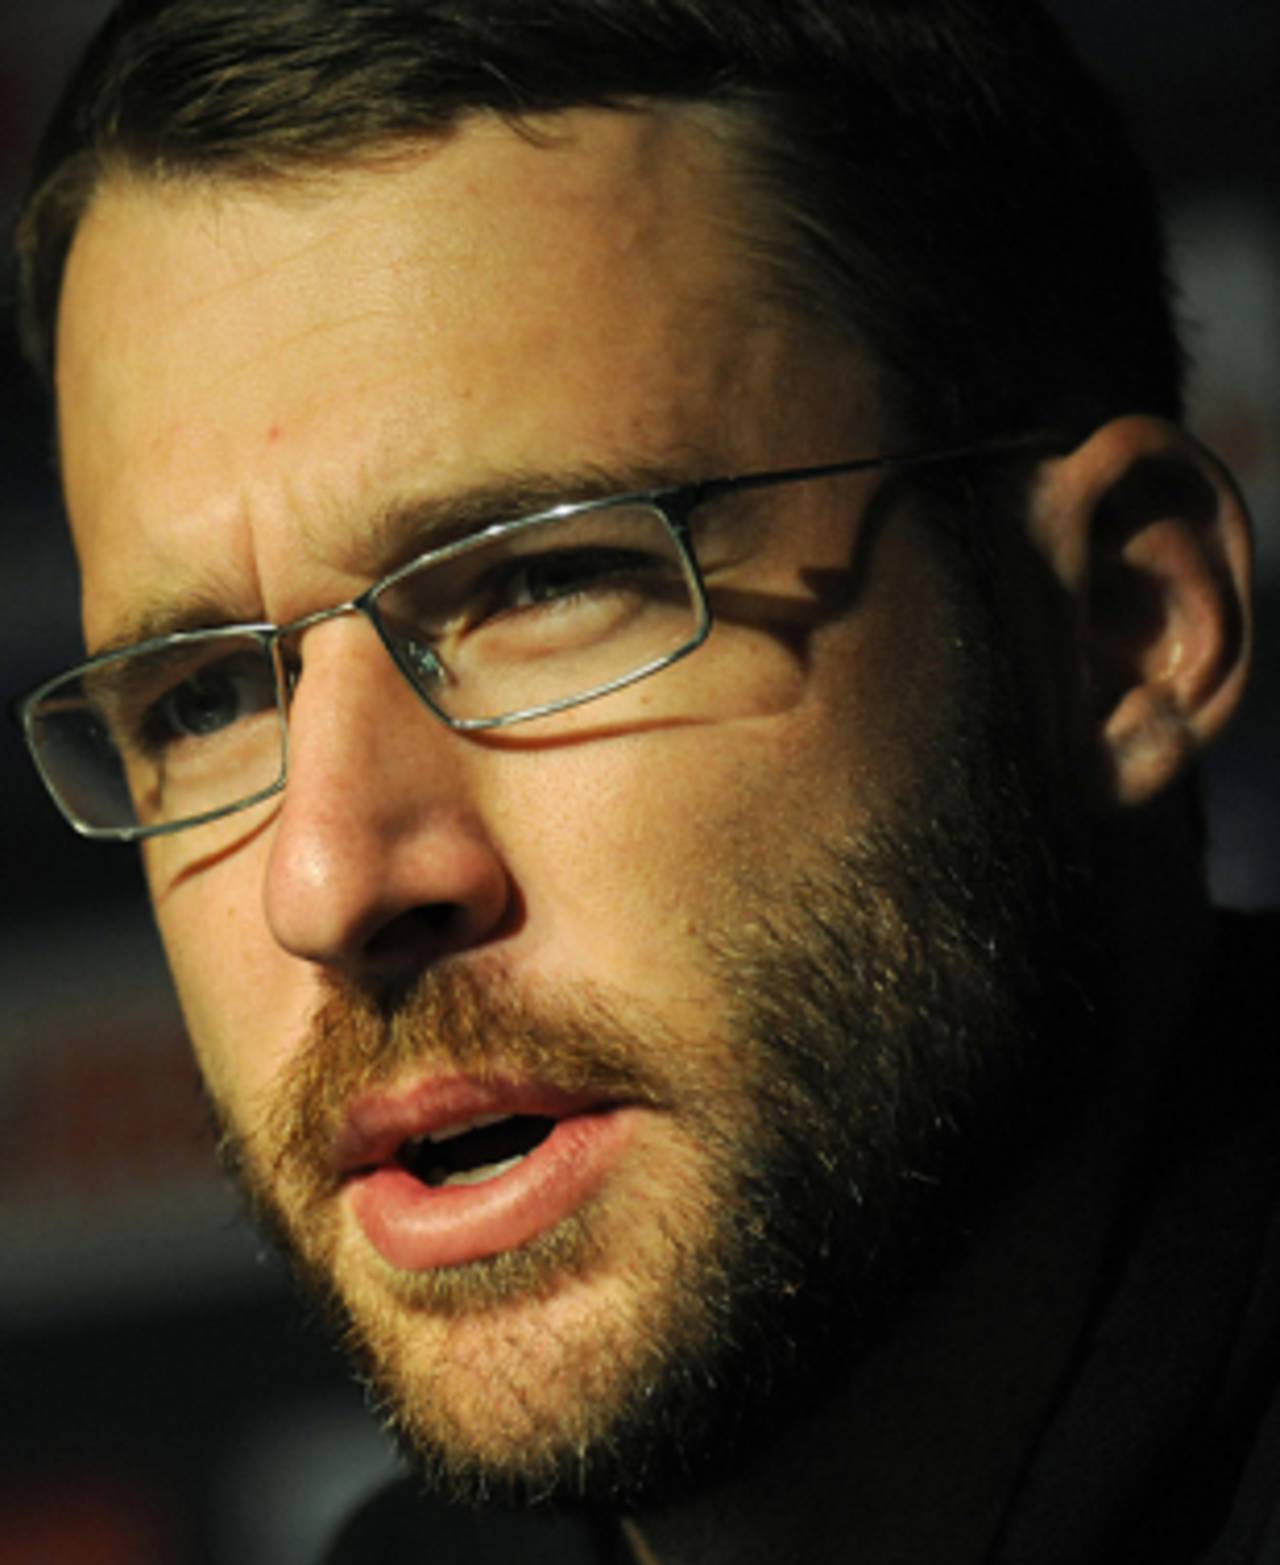 Daniel Vettori is set to play his first games in Australia as an overseas player&nbsp;&nbsp;&bull;&nbsp;&nbsp;AFP